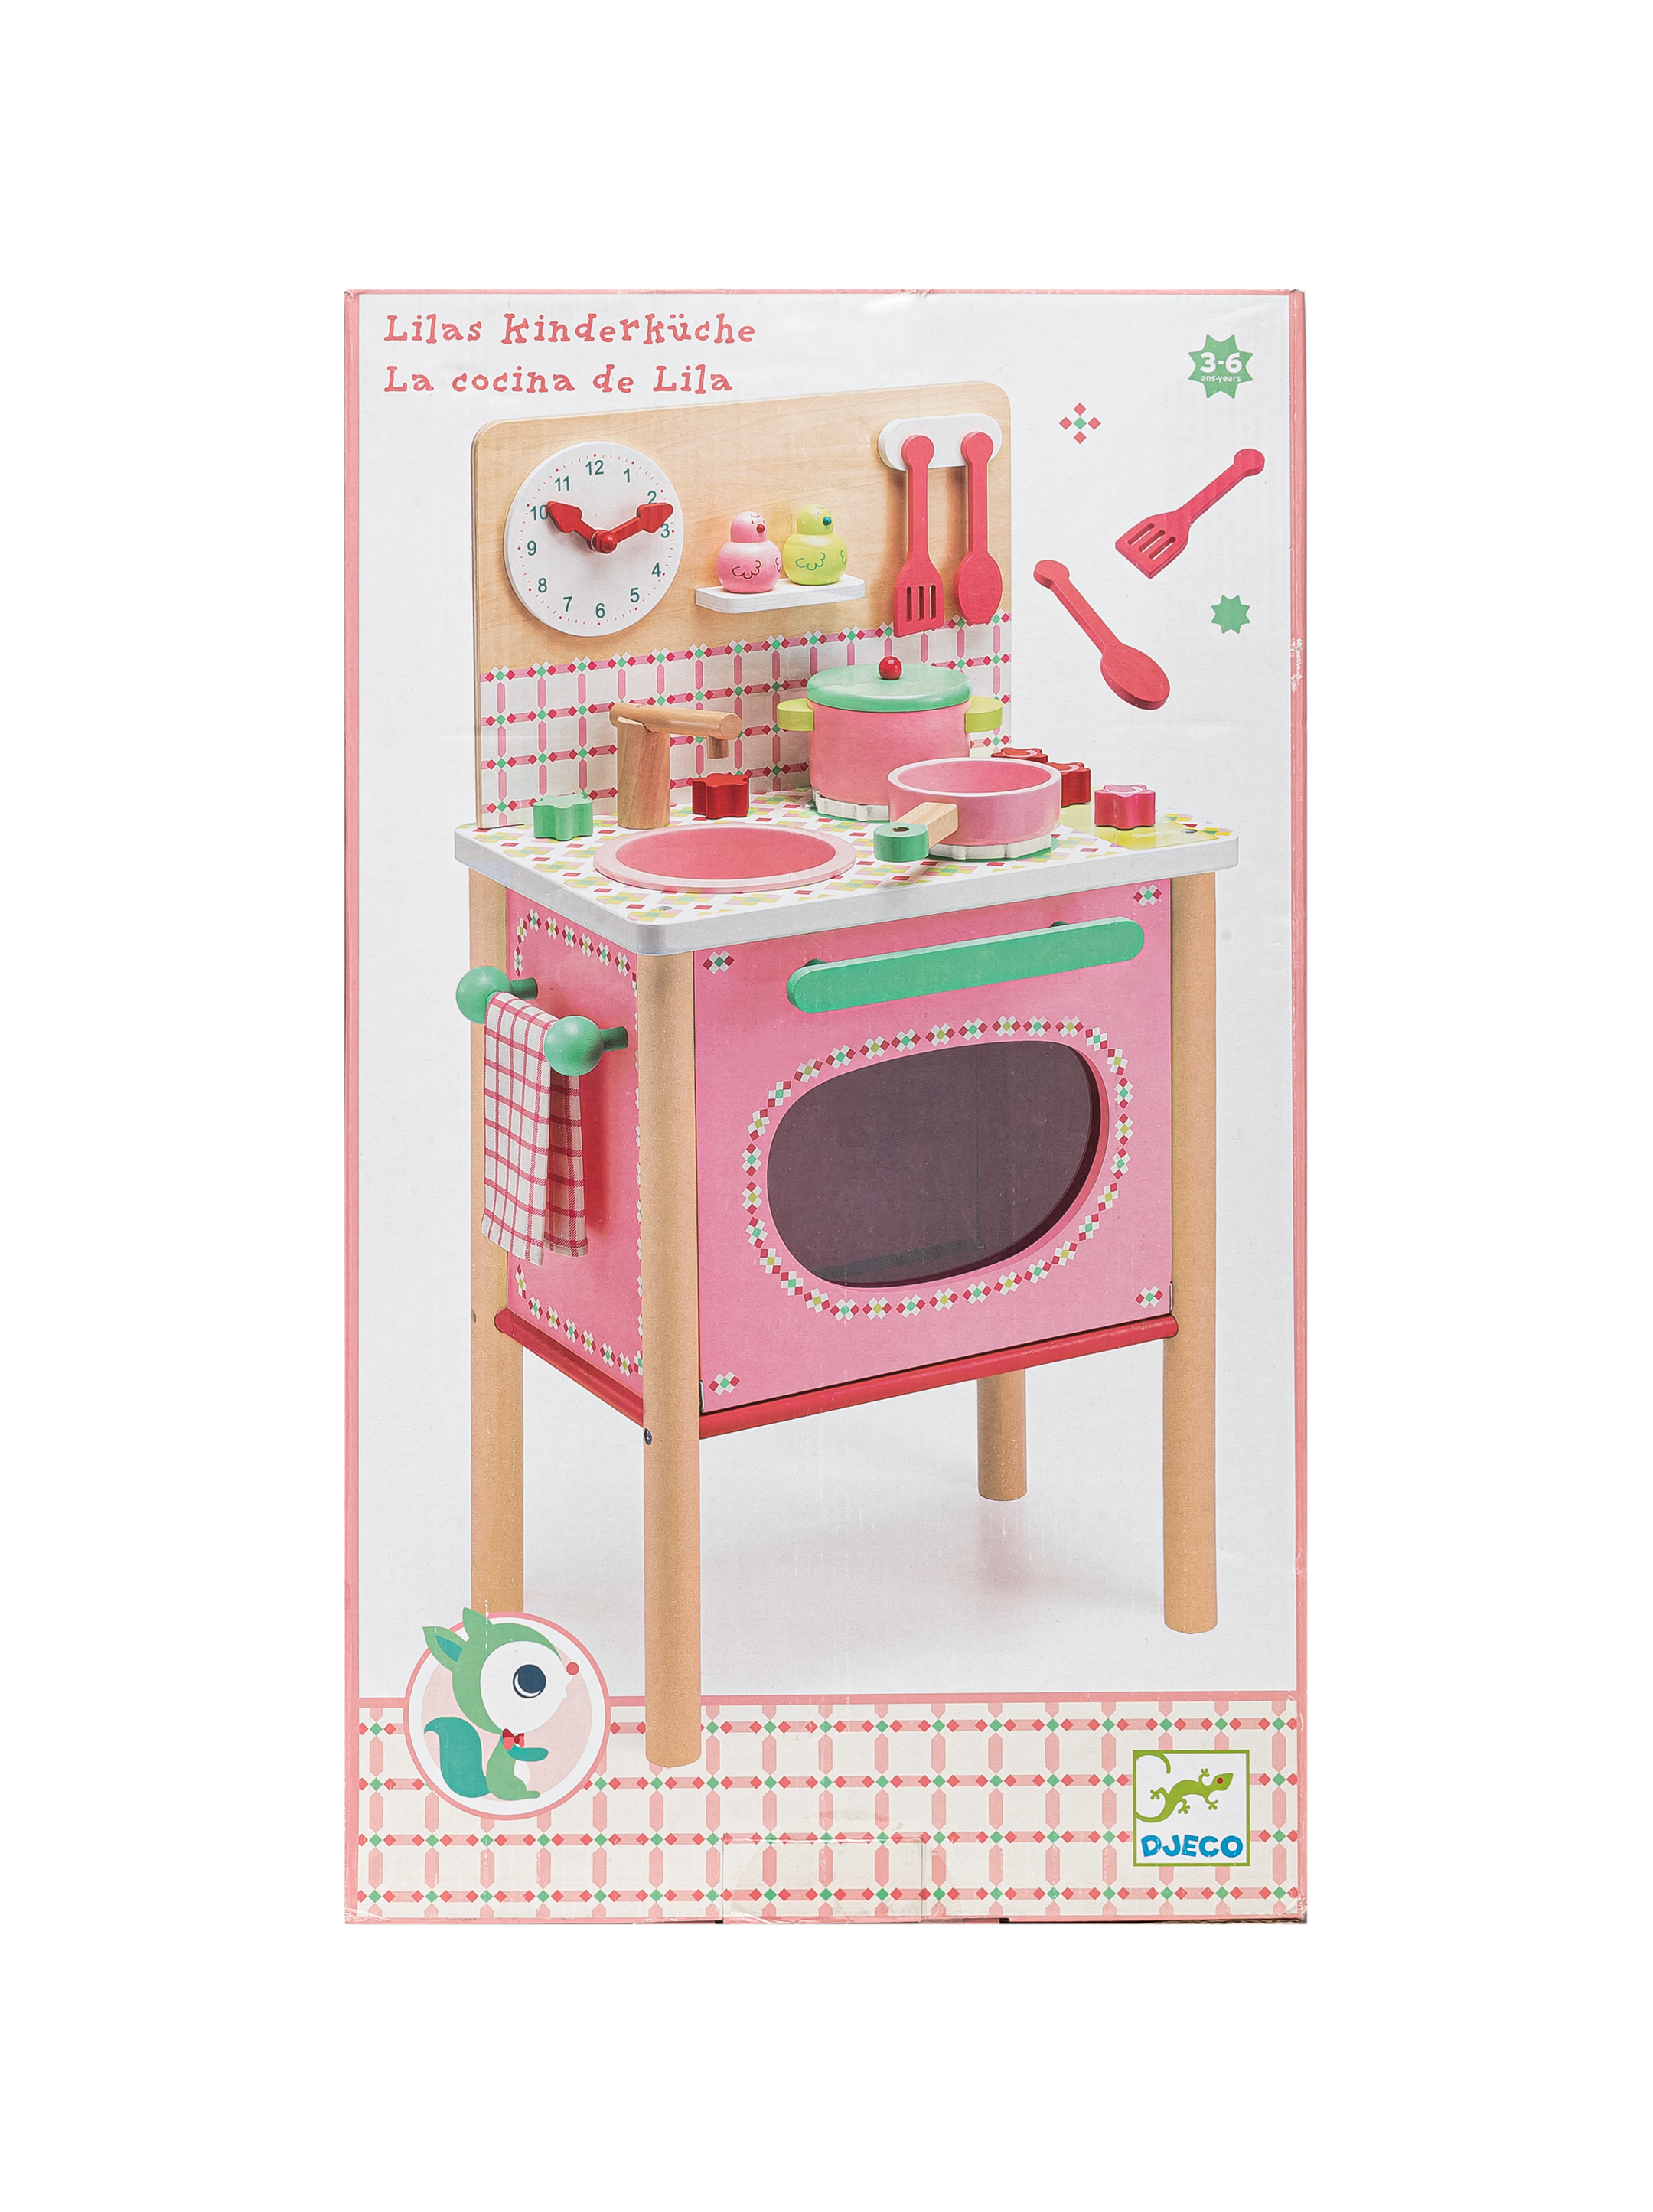 Детская кухня игрушечная | Купить игровую кухню для девочки недорого - Интернет магазин Игротека